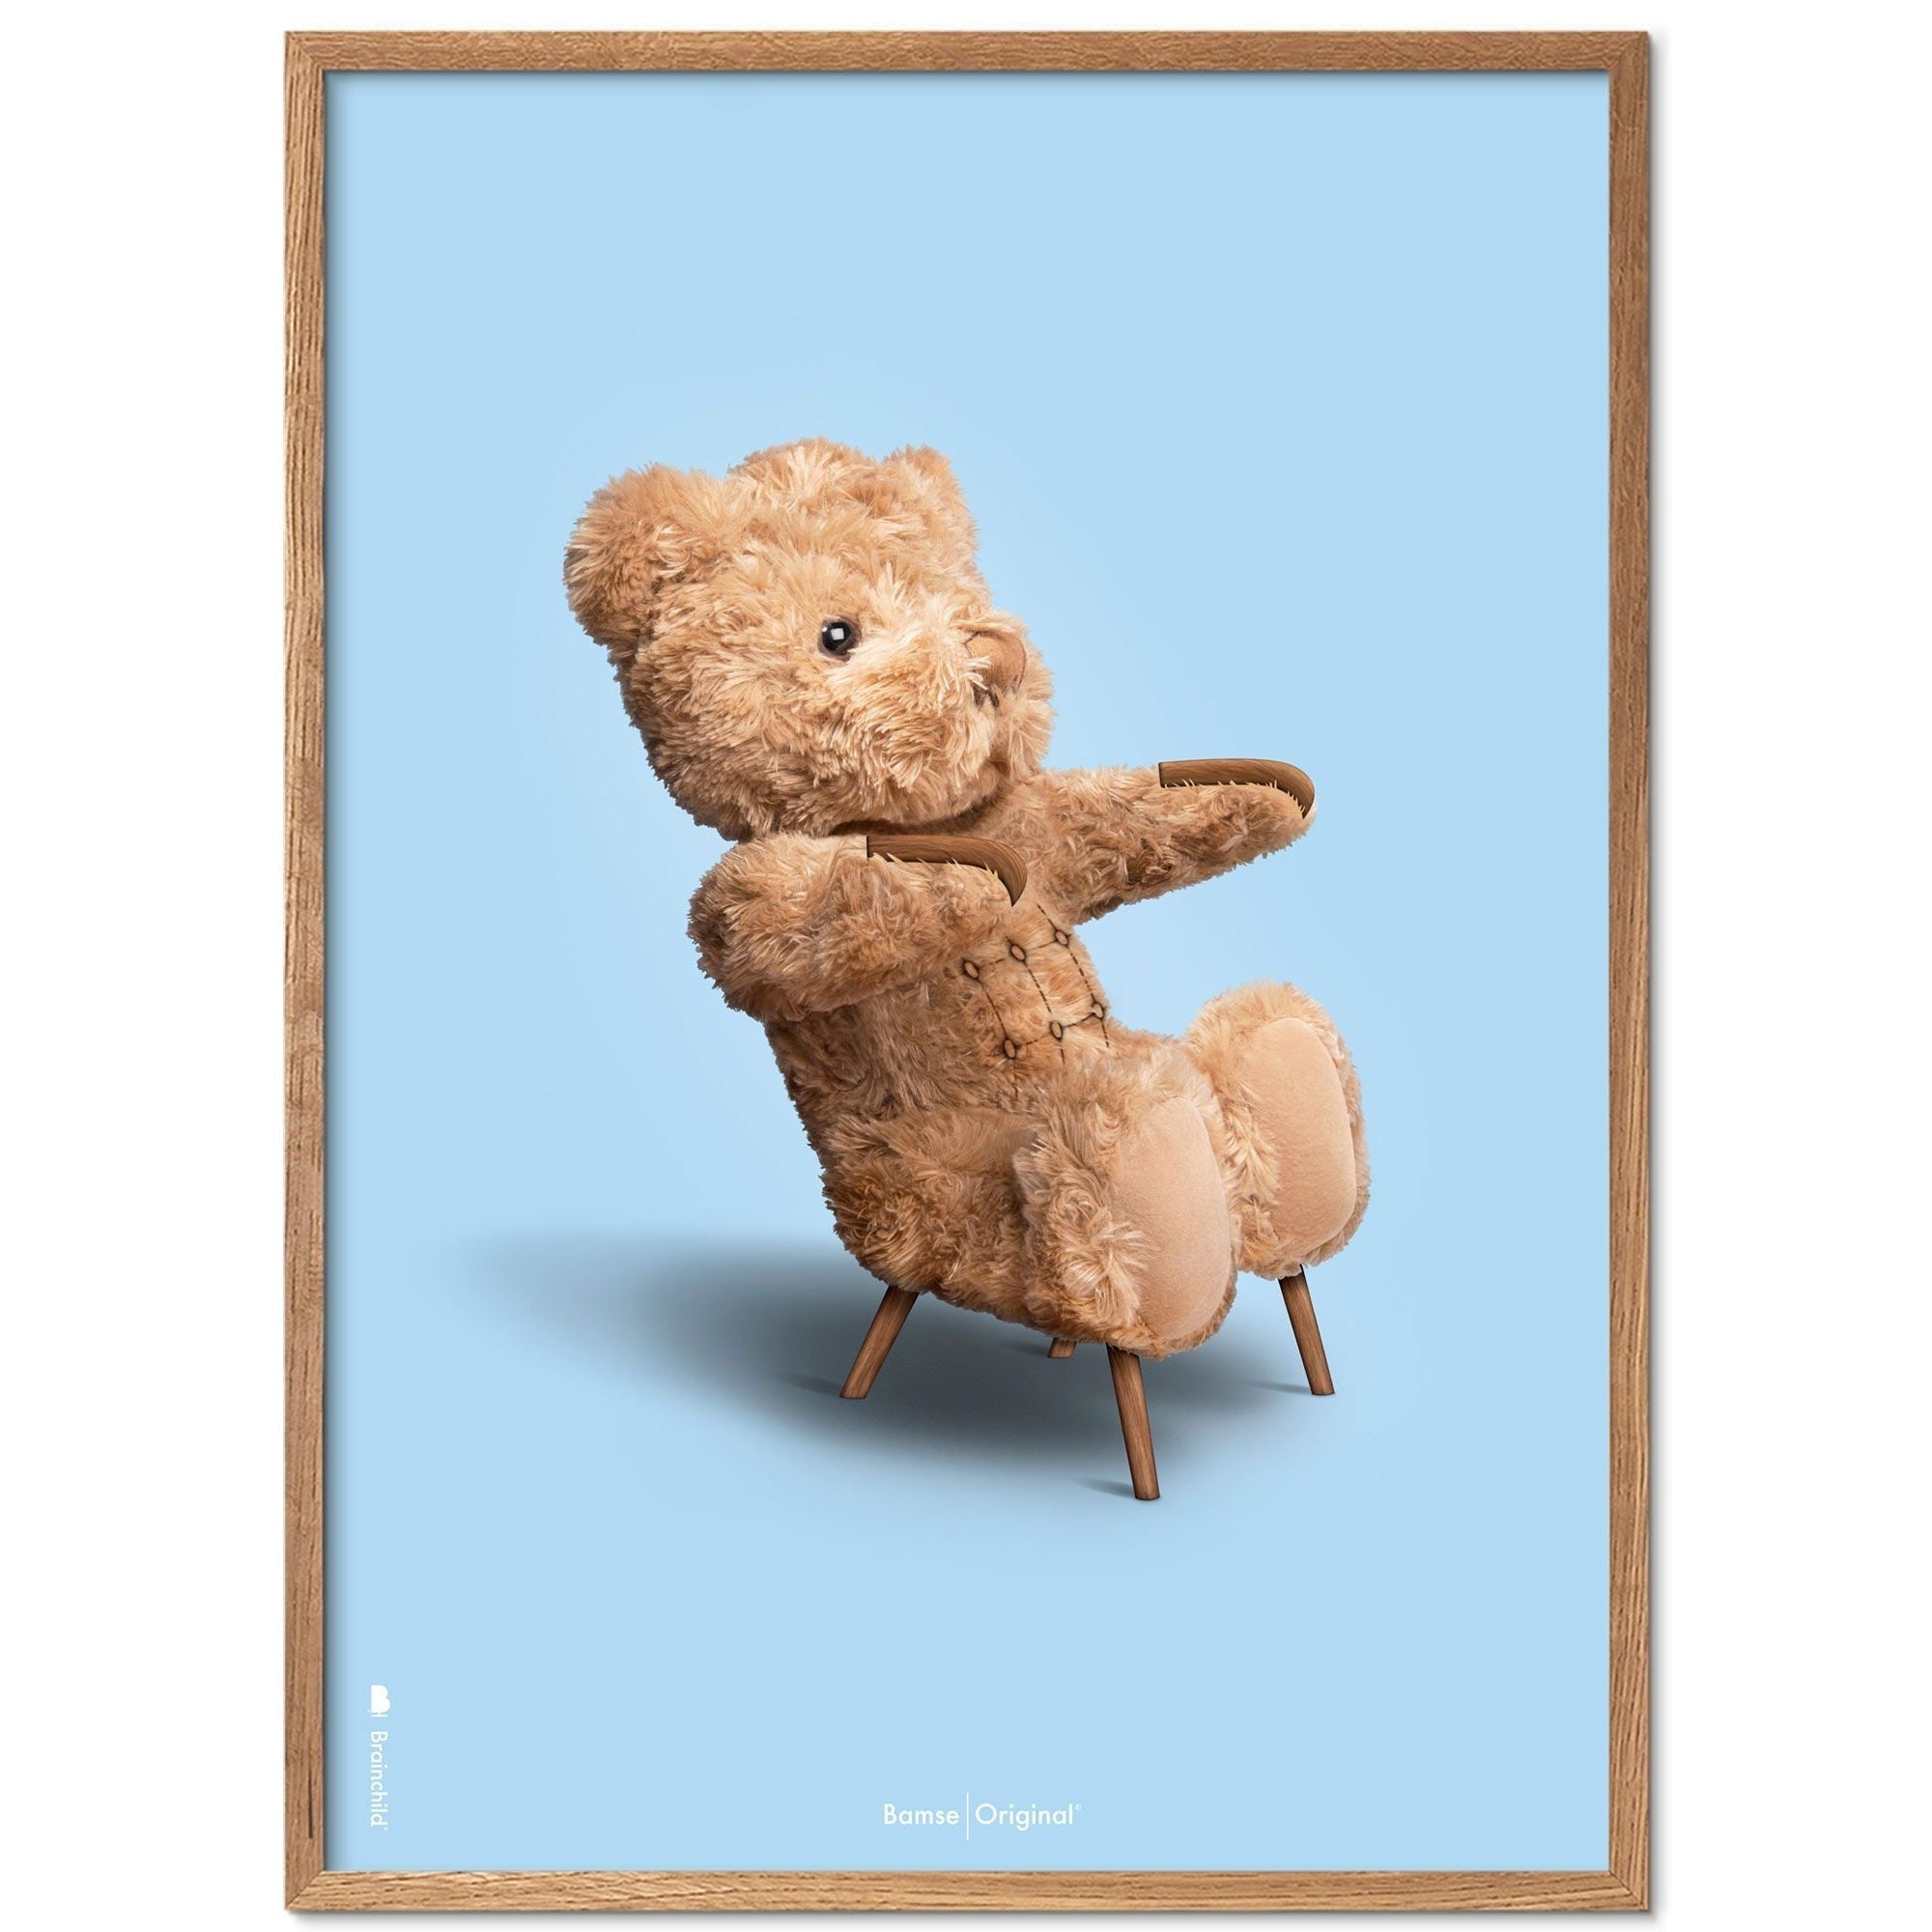 Brainchild Teddy Bear Classic plakát z plakátu vyrobený z světla dřeva Ramme 50x70 cm, světle modré pozadí